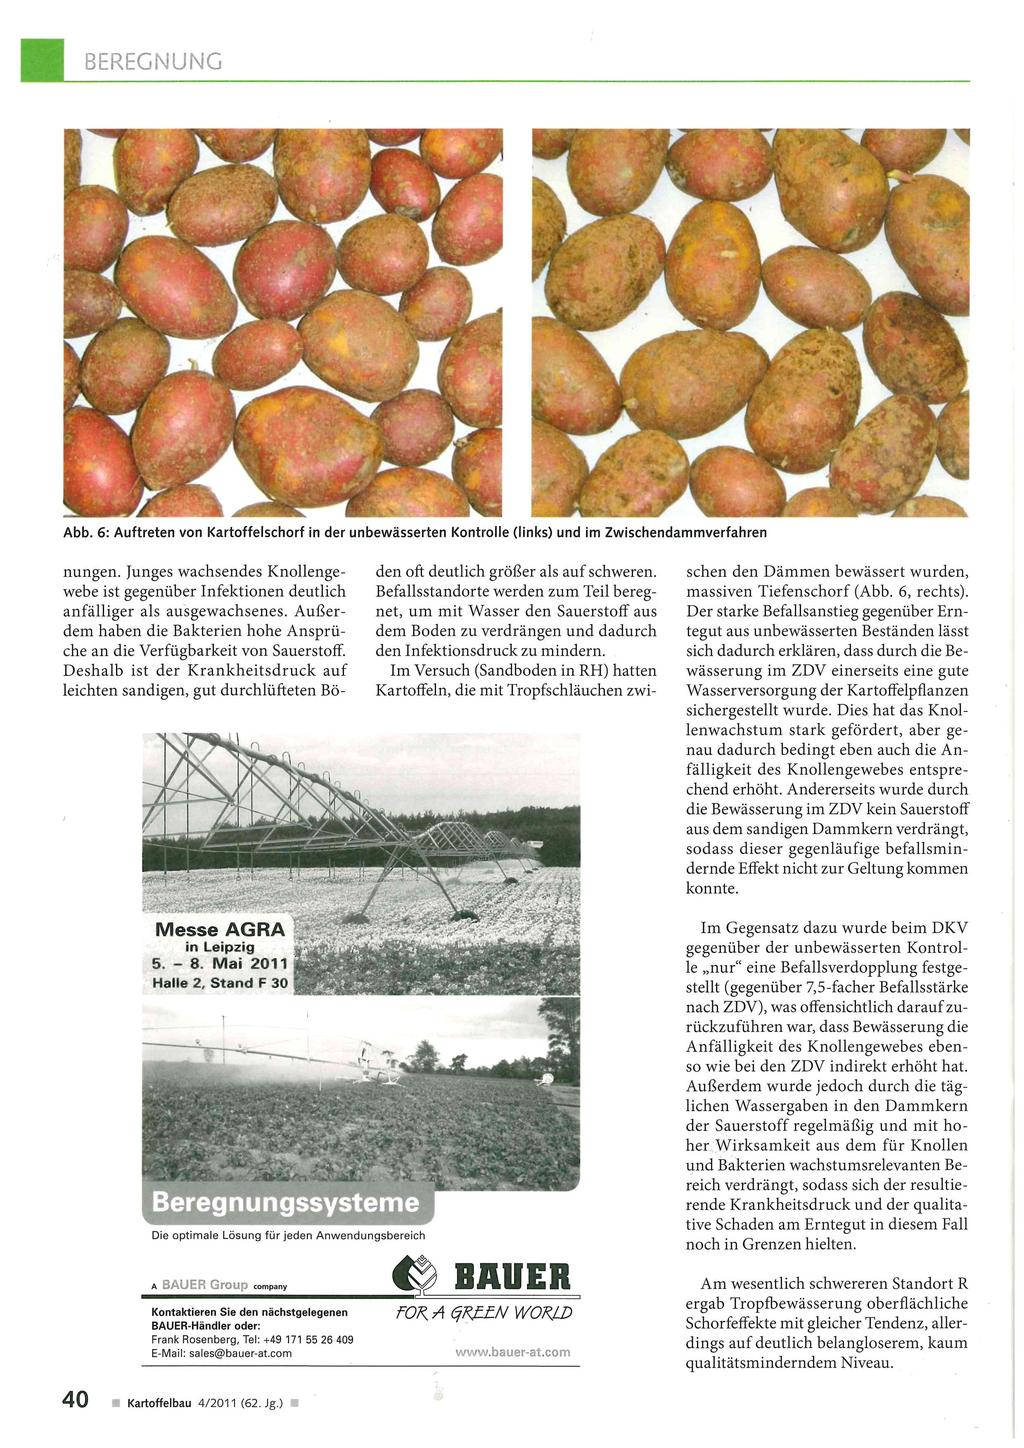 Abb. 6: Auftreten von Kartoffelschorf in der unbewässerten Kontrolle (links) und im Zwischendammverfahren nungen.